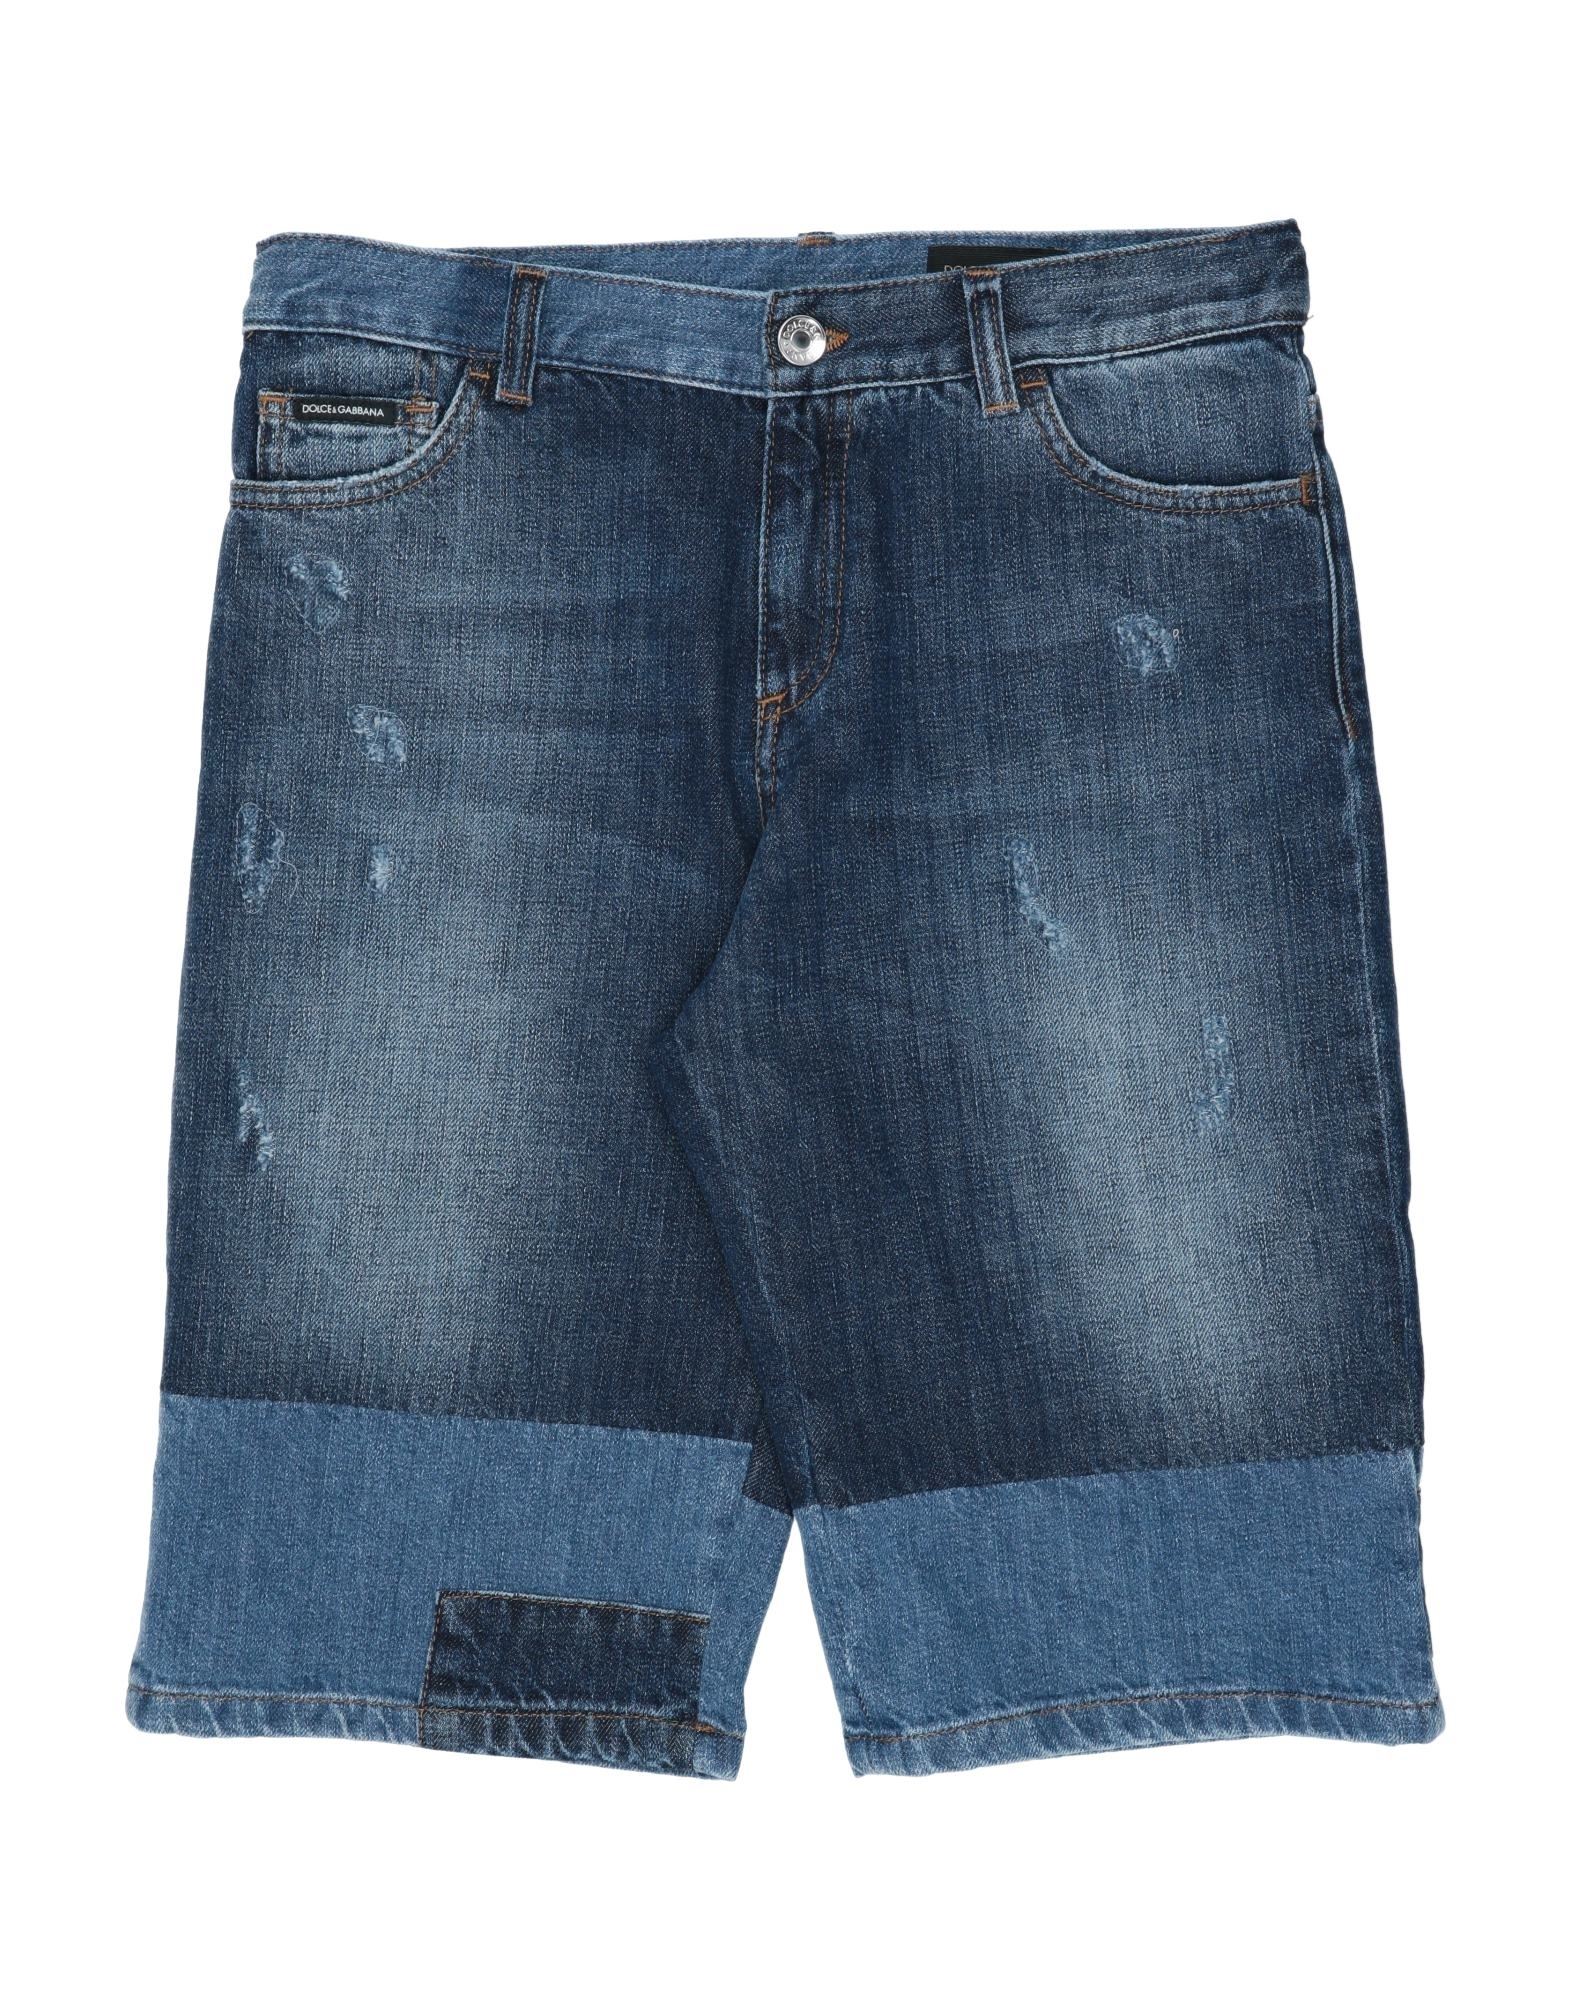 Dolce & Gabbana Kids'  Toddler Boy Denim Shorts Blue Size 7 Cotton, Calfskin, Zamak